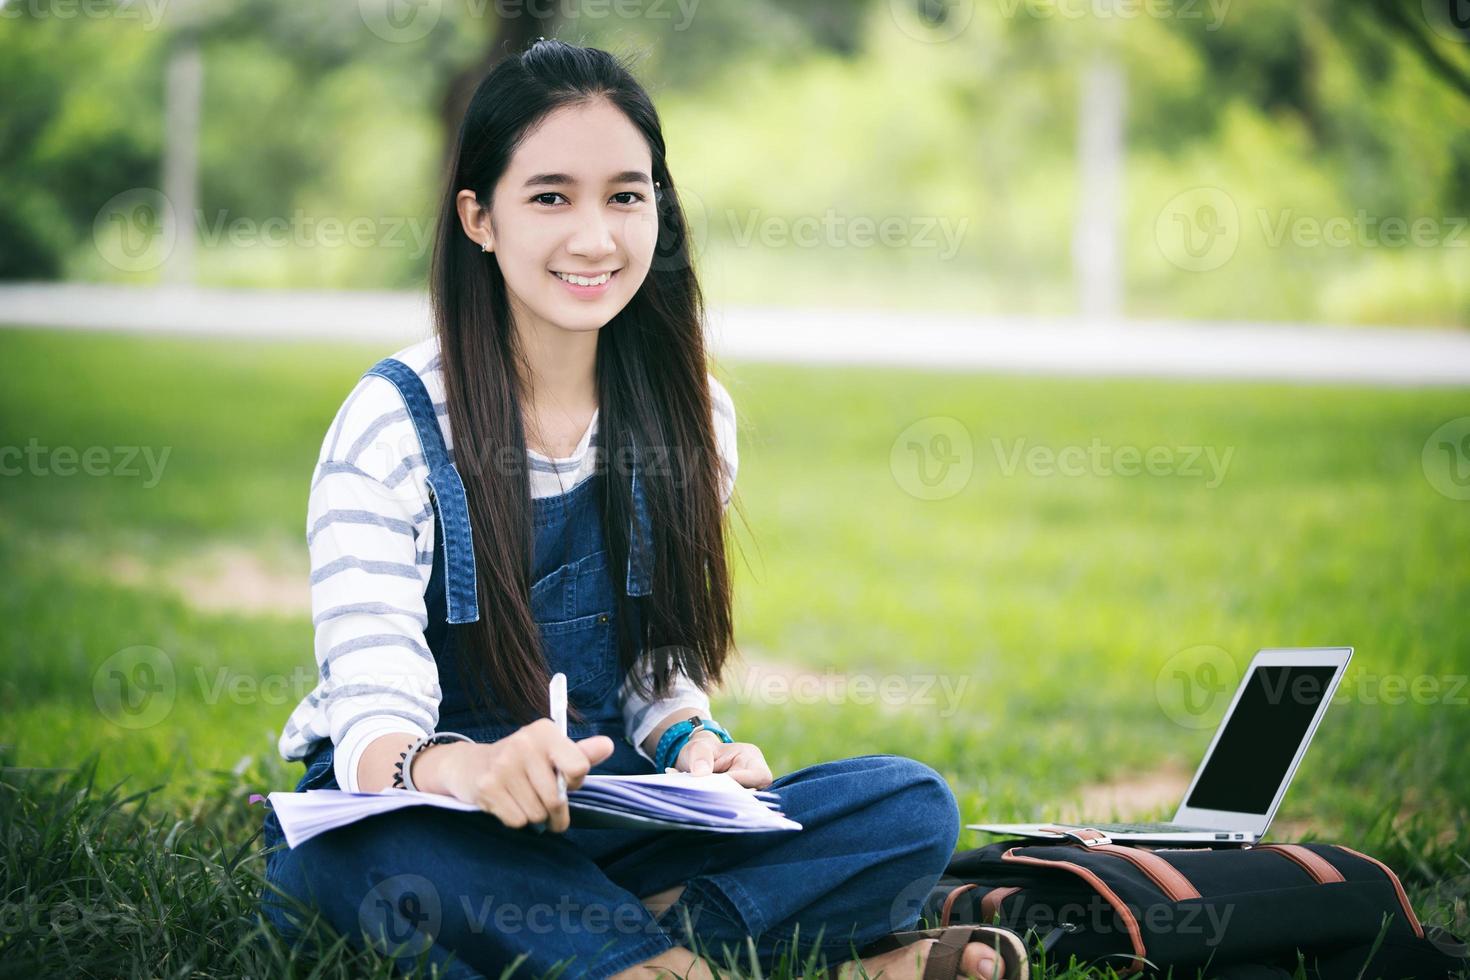 estudiante sonriente que estudia afuera en el césped foto